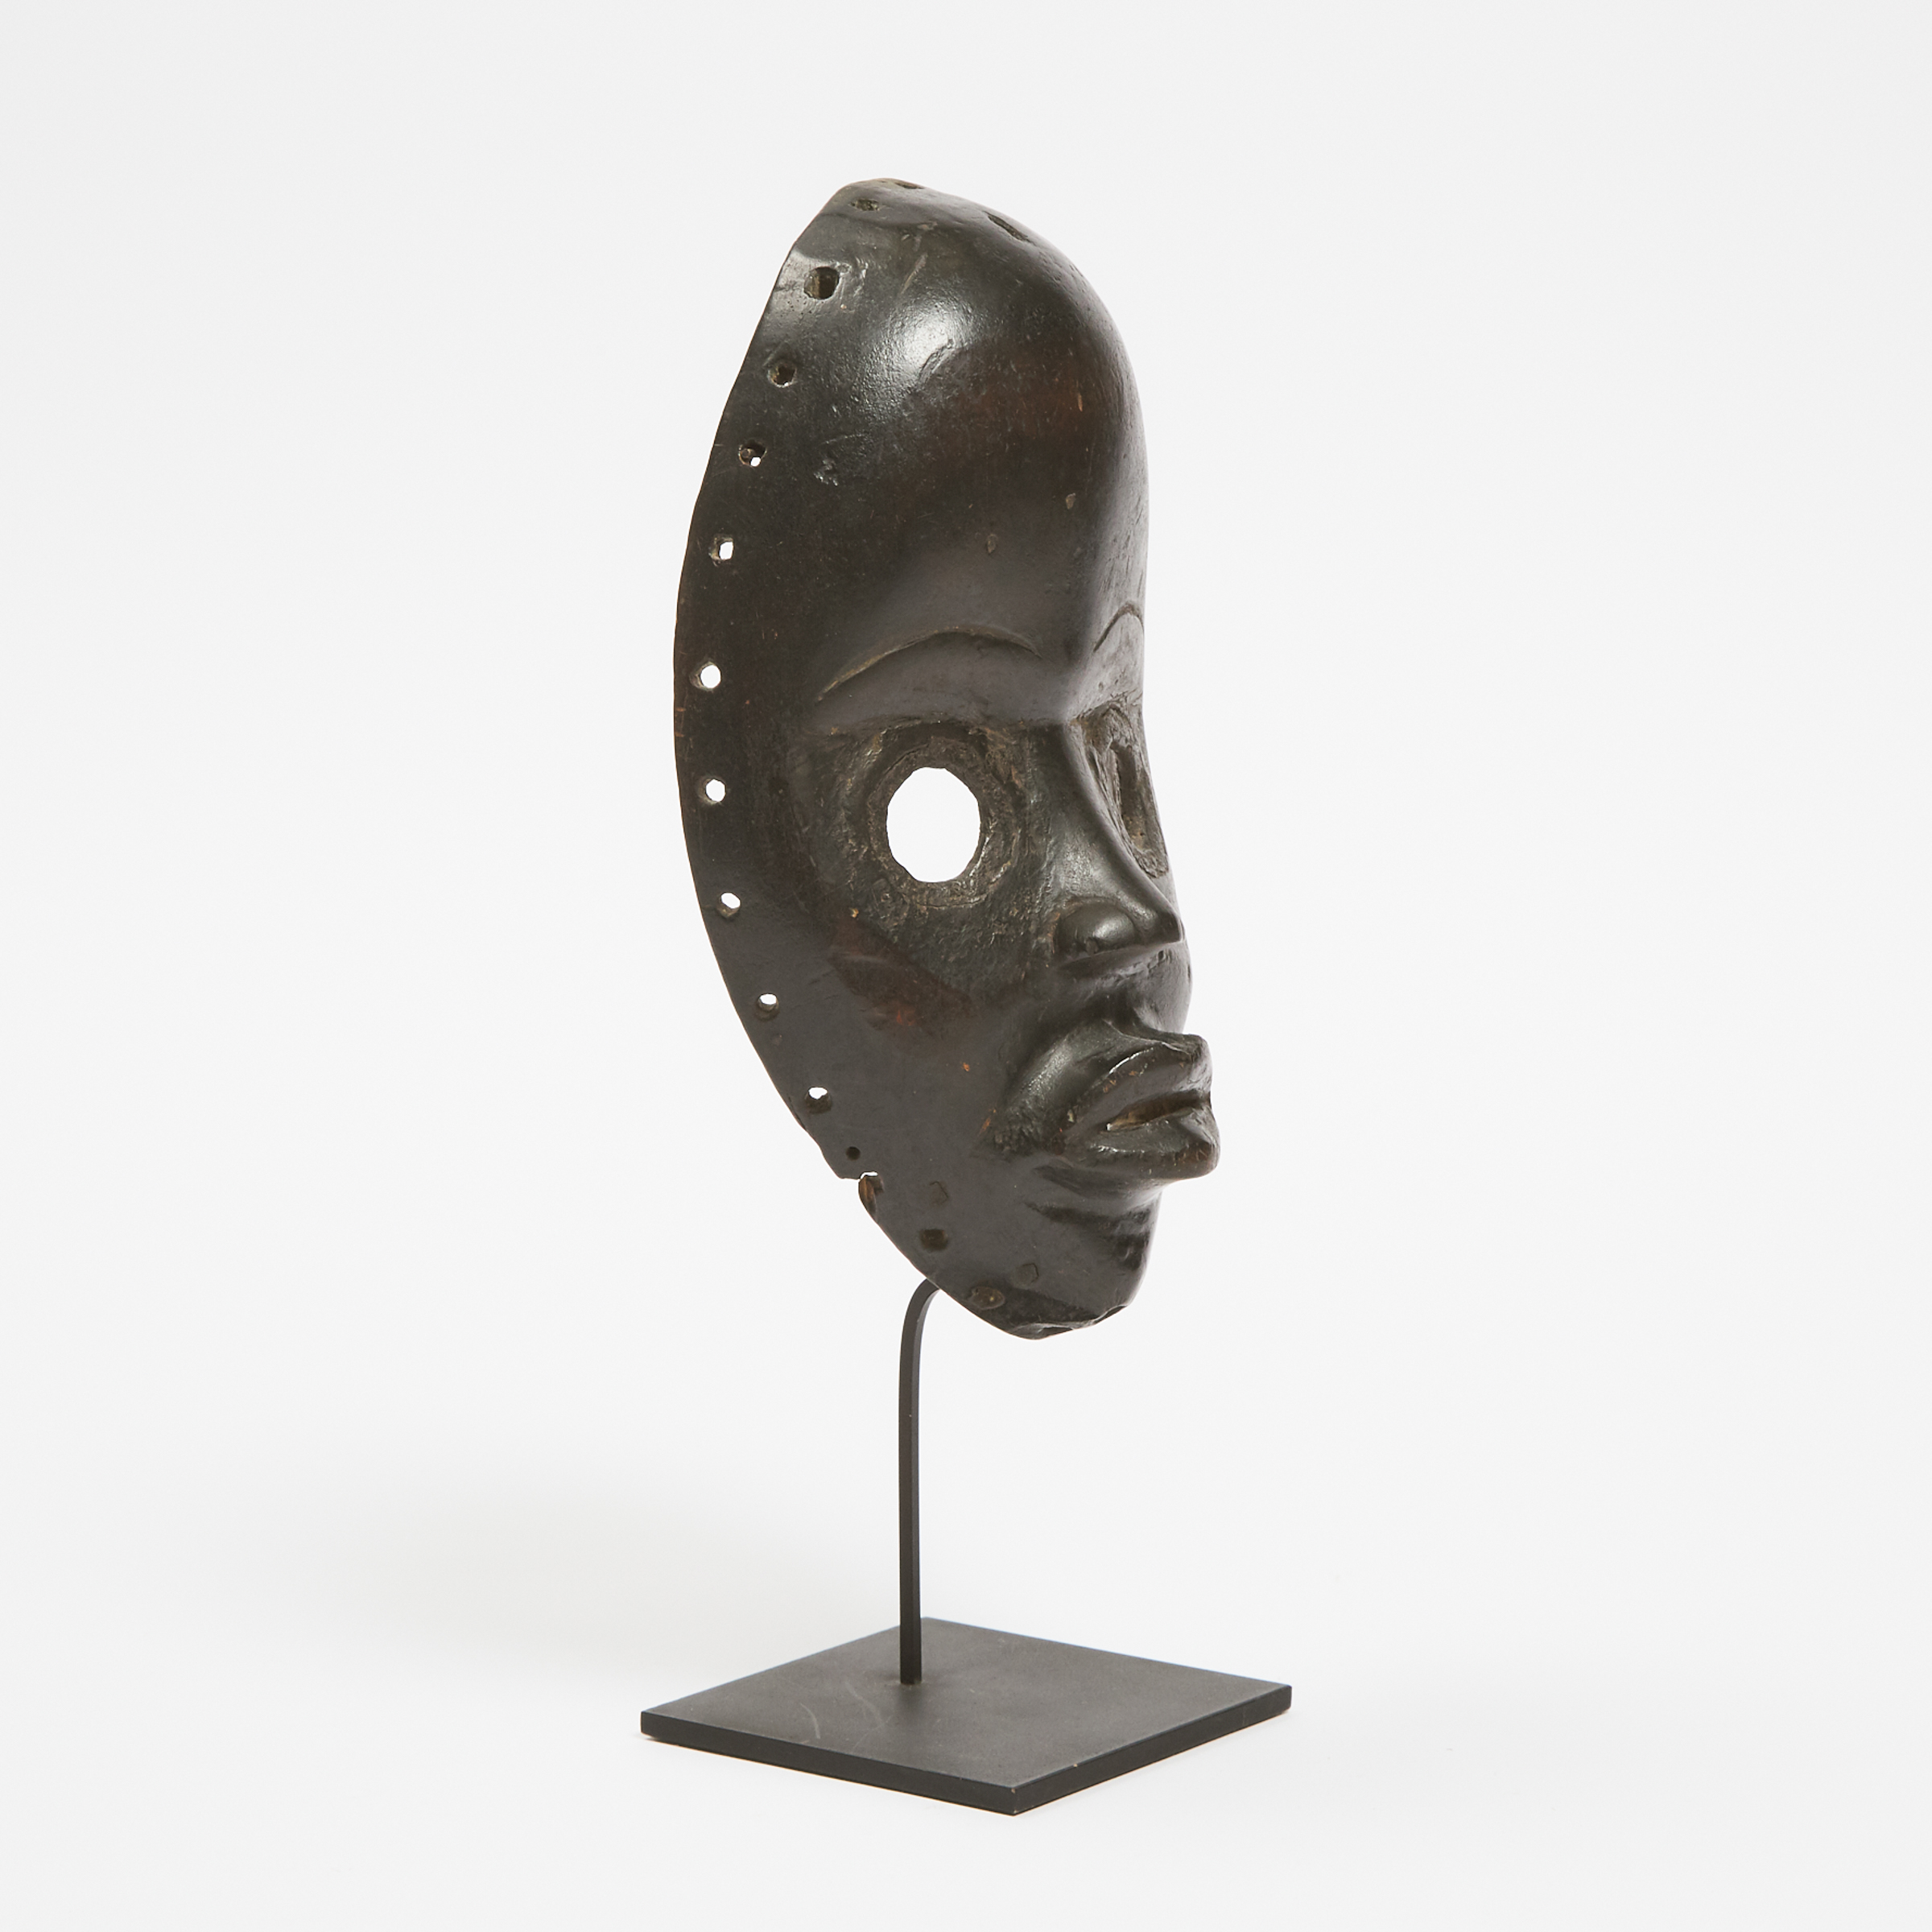 Dan Gunye Ge Mask, Ivory Coast/Liberia, West Africa, late 19th to early 20th century